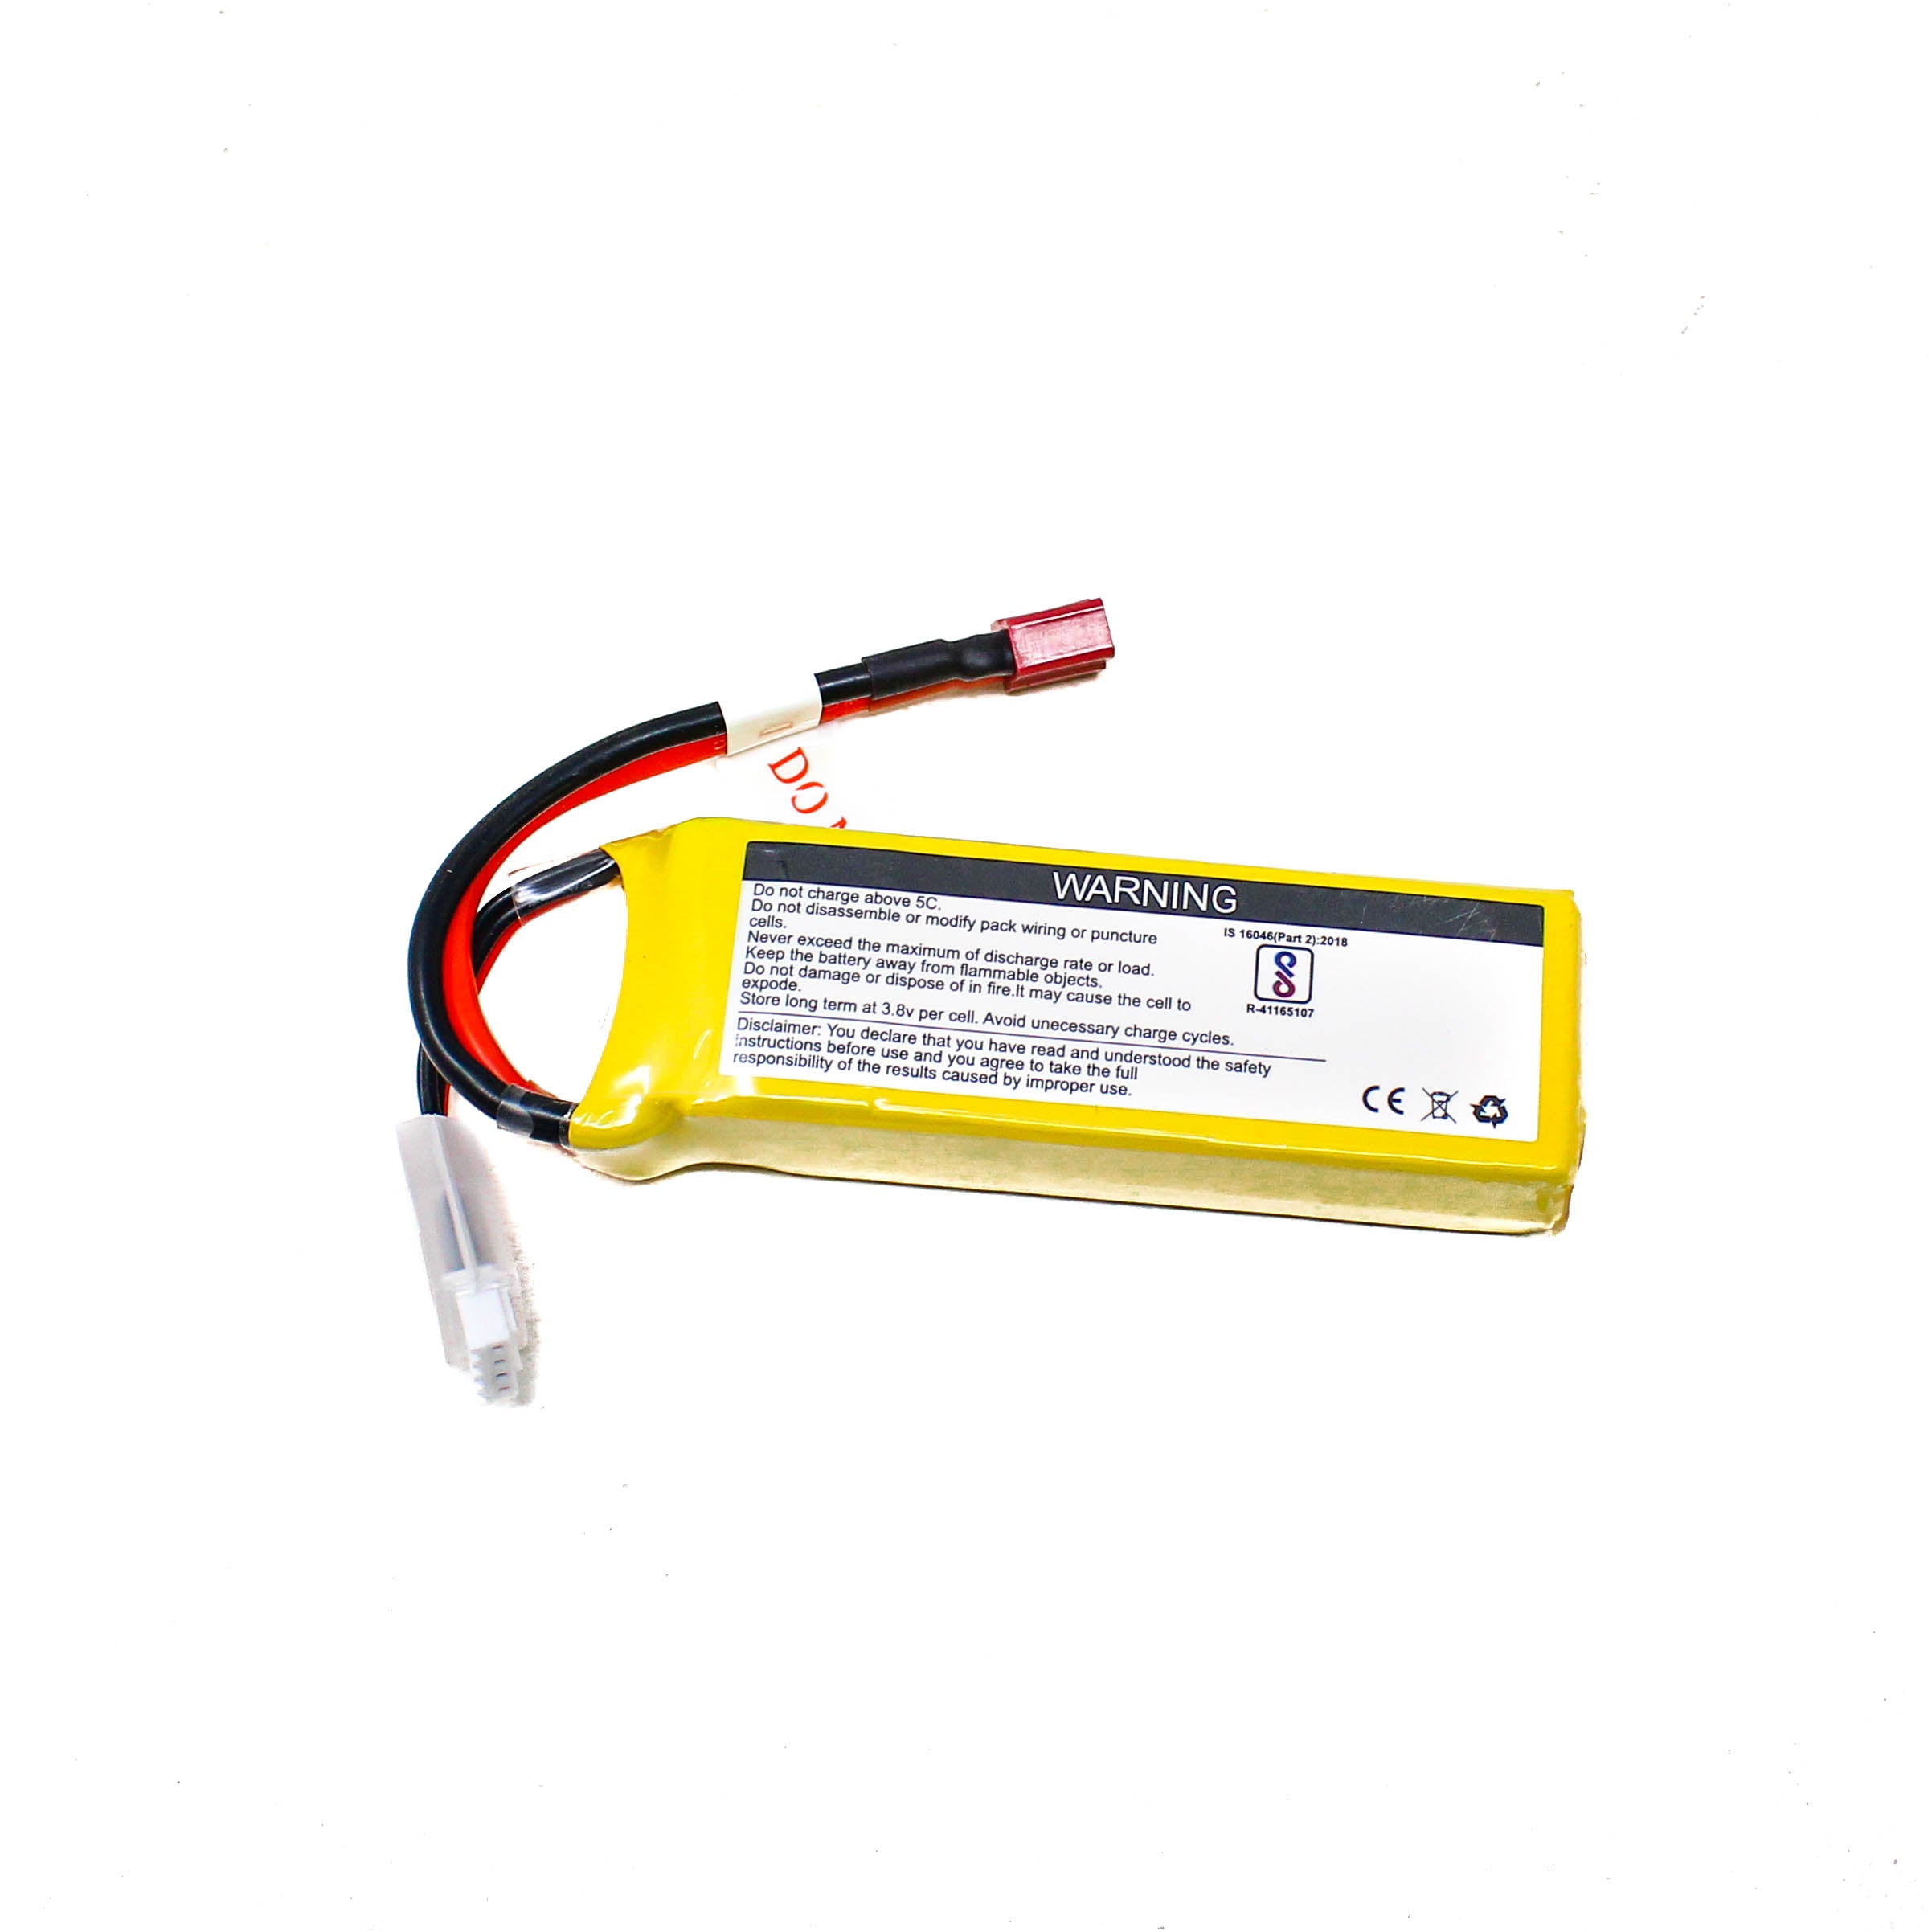 Lemon 1550mAh 3S 25C/50C Lithium Polymer Battery Pack